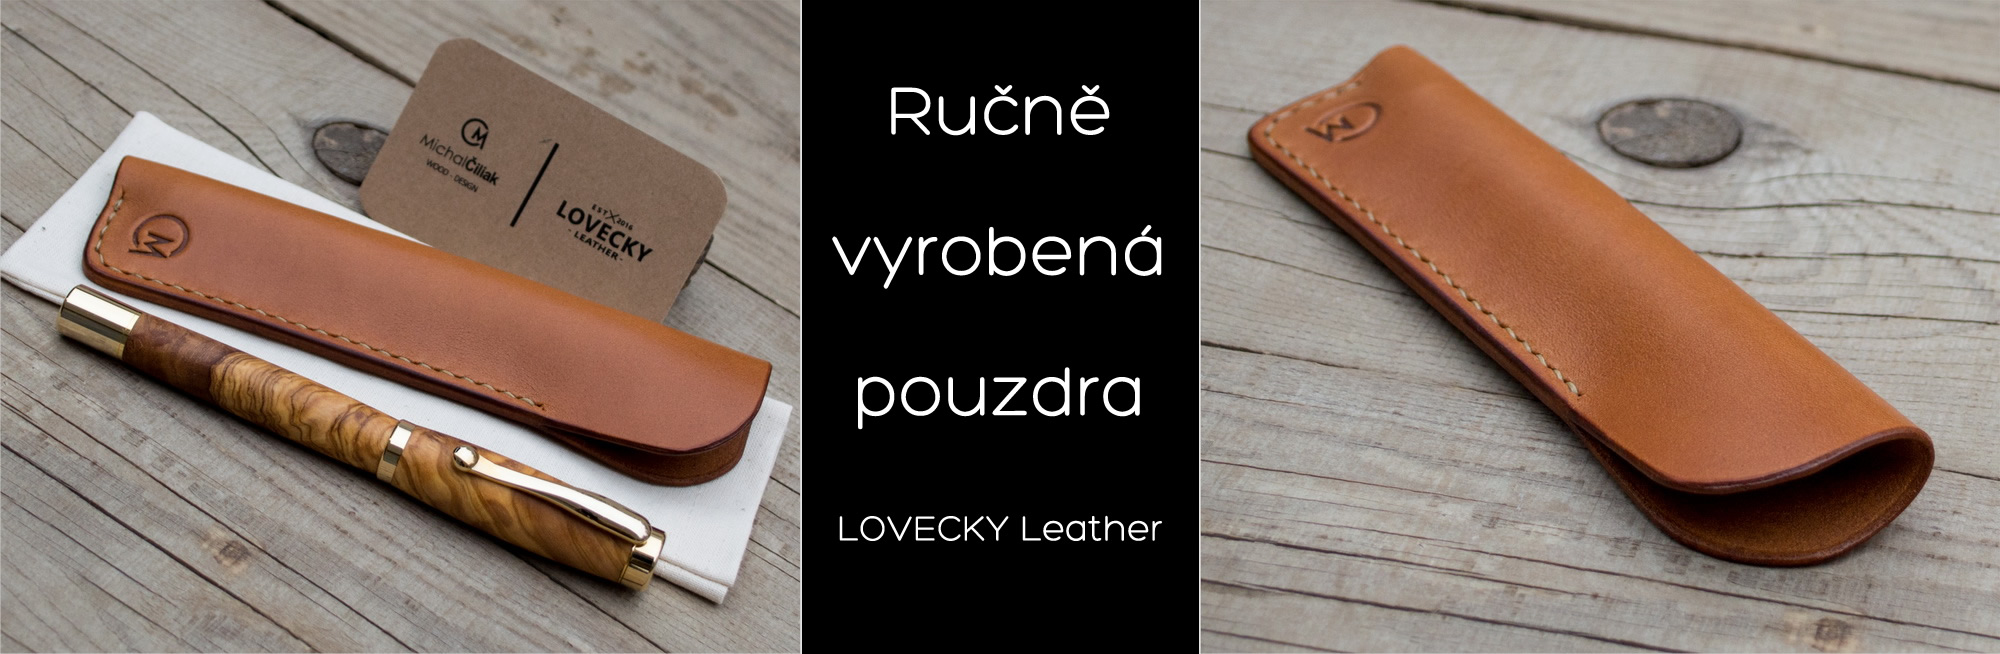 Pouzdra Lovecky leather